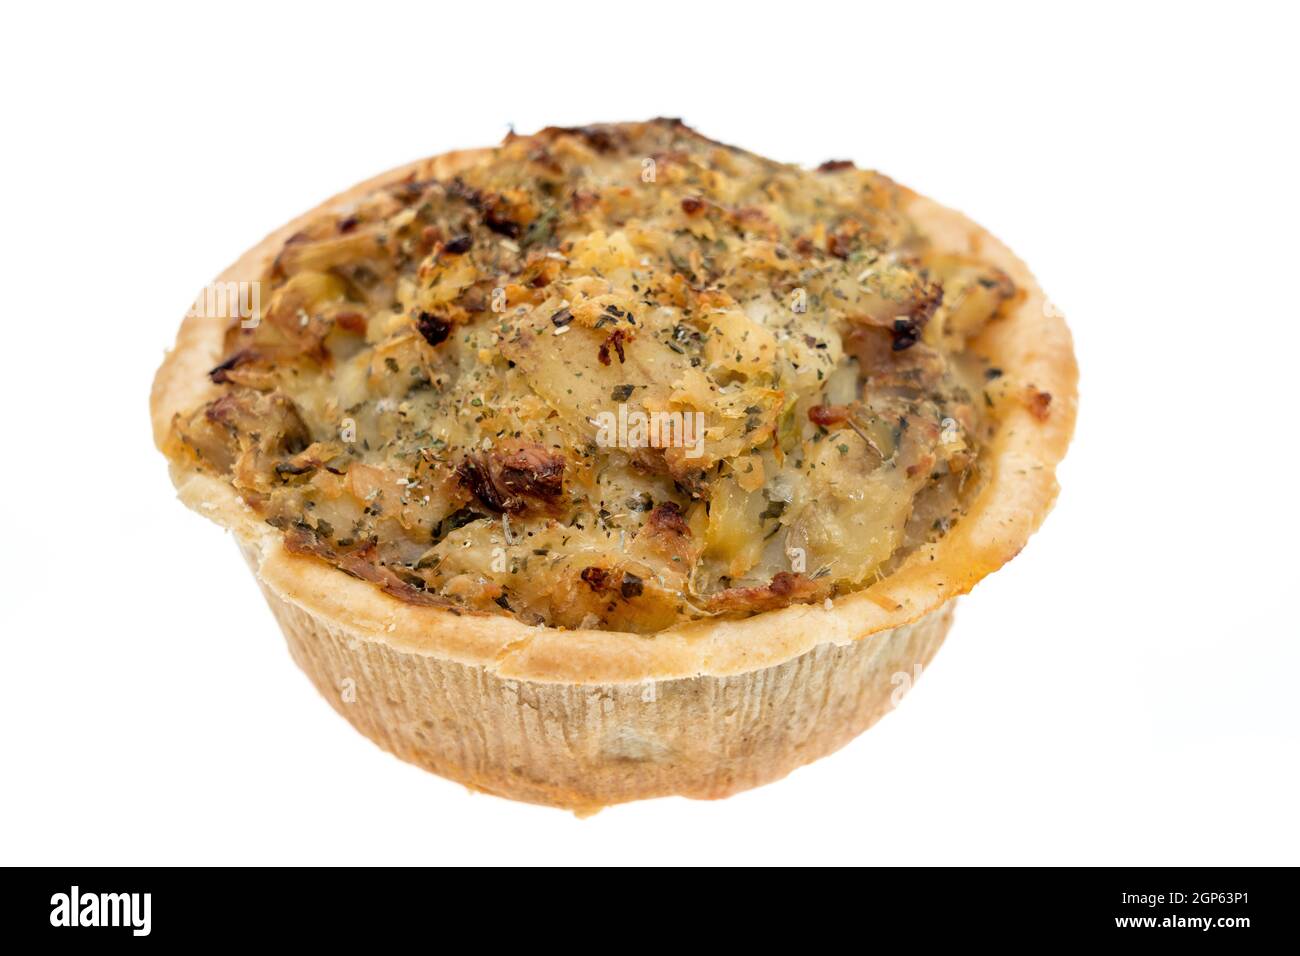 Homity Pie - ist ein Gebäck Pie gefüllt mit Kartoffelpüree, Zwiebeln und Käse - weißer Hintergrund Stockfoto